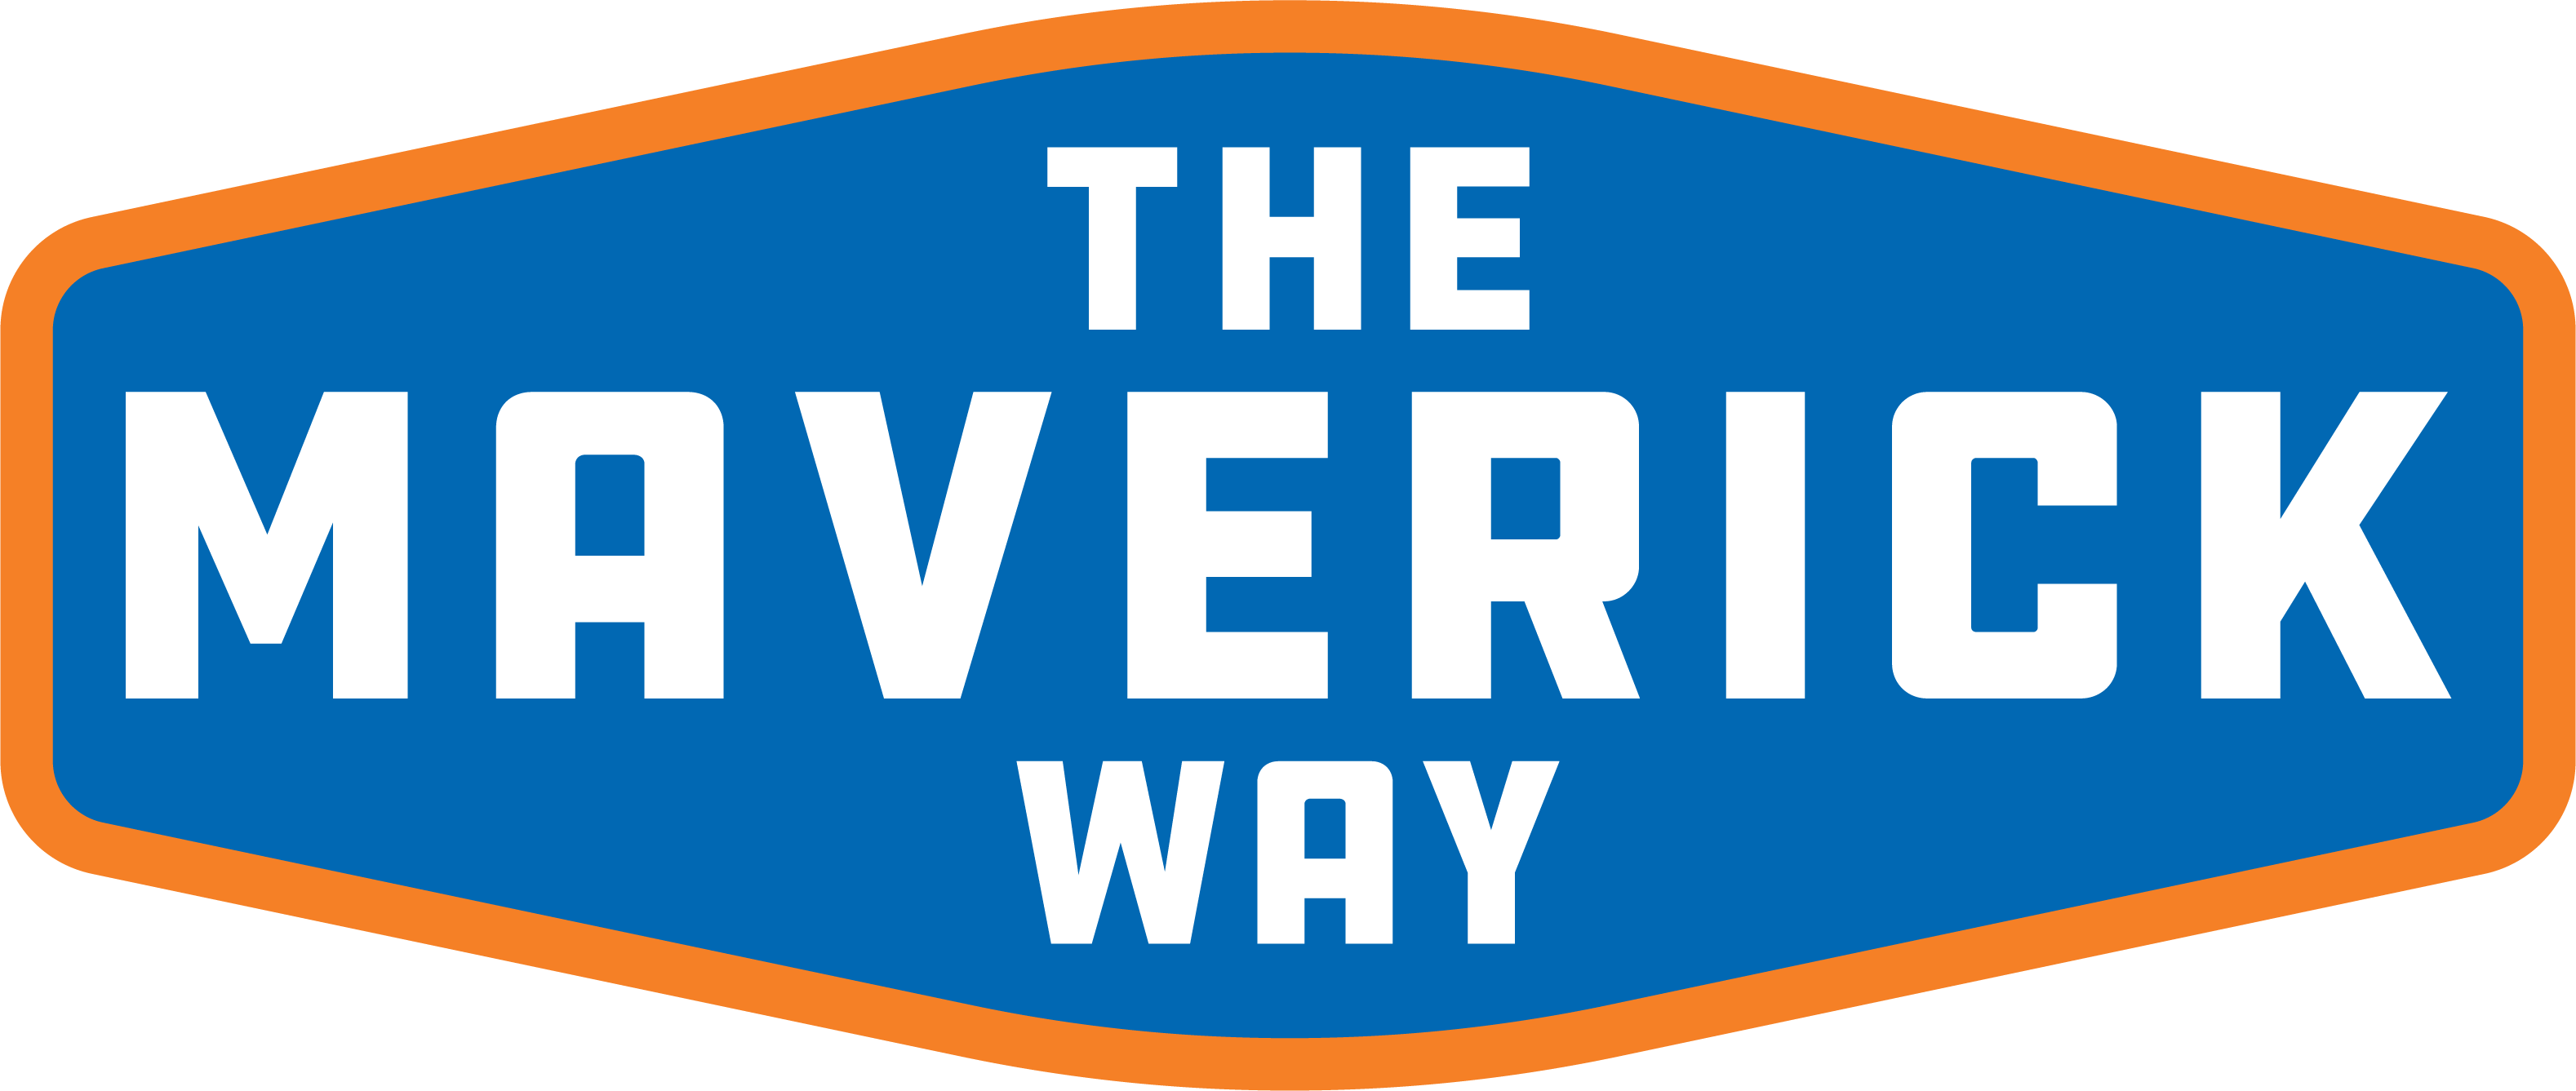 The maverick way blue and orange logo